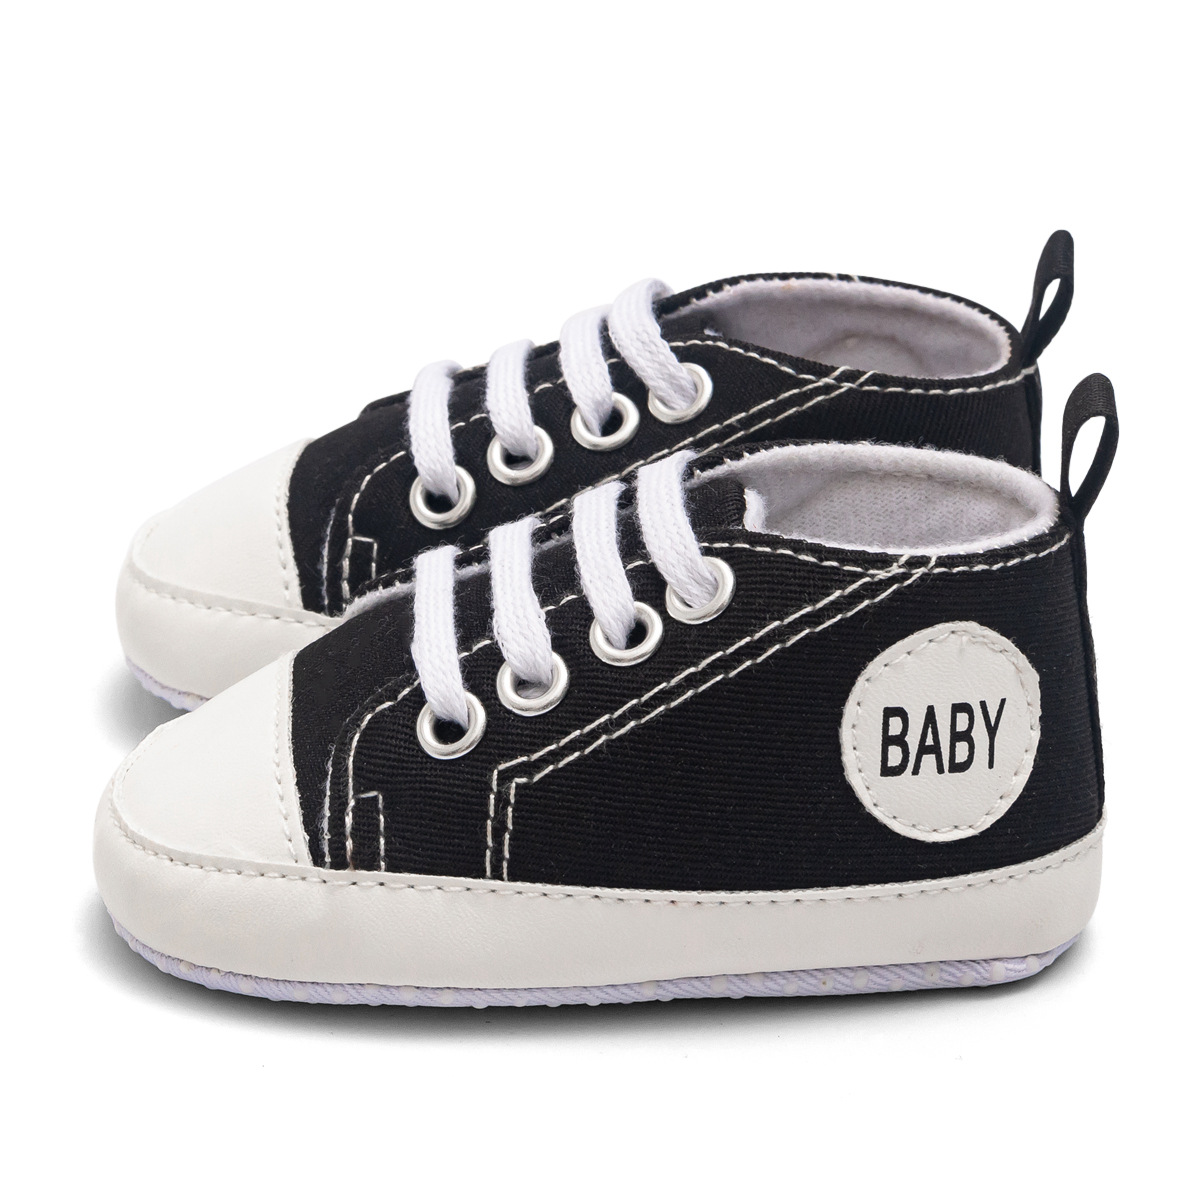 Chaussures bébé en Toile - Ref 3436676 Image 36